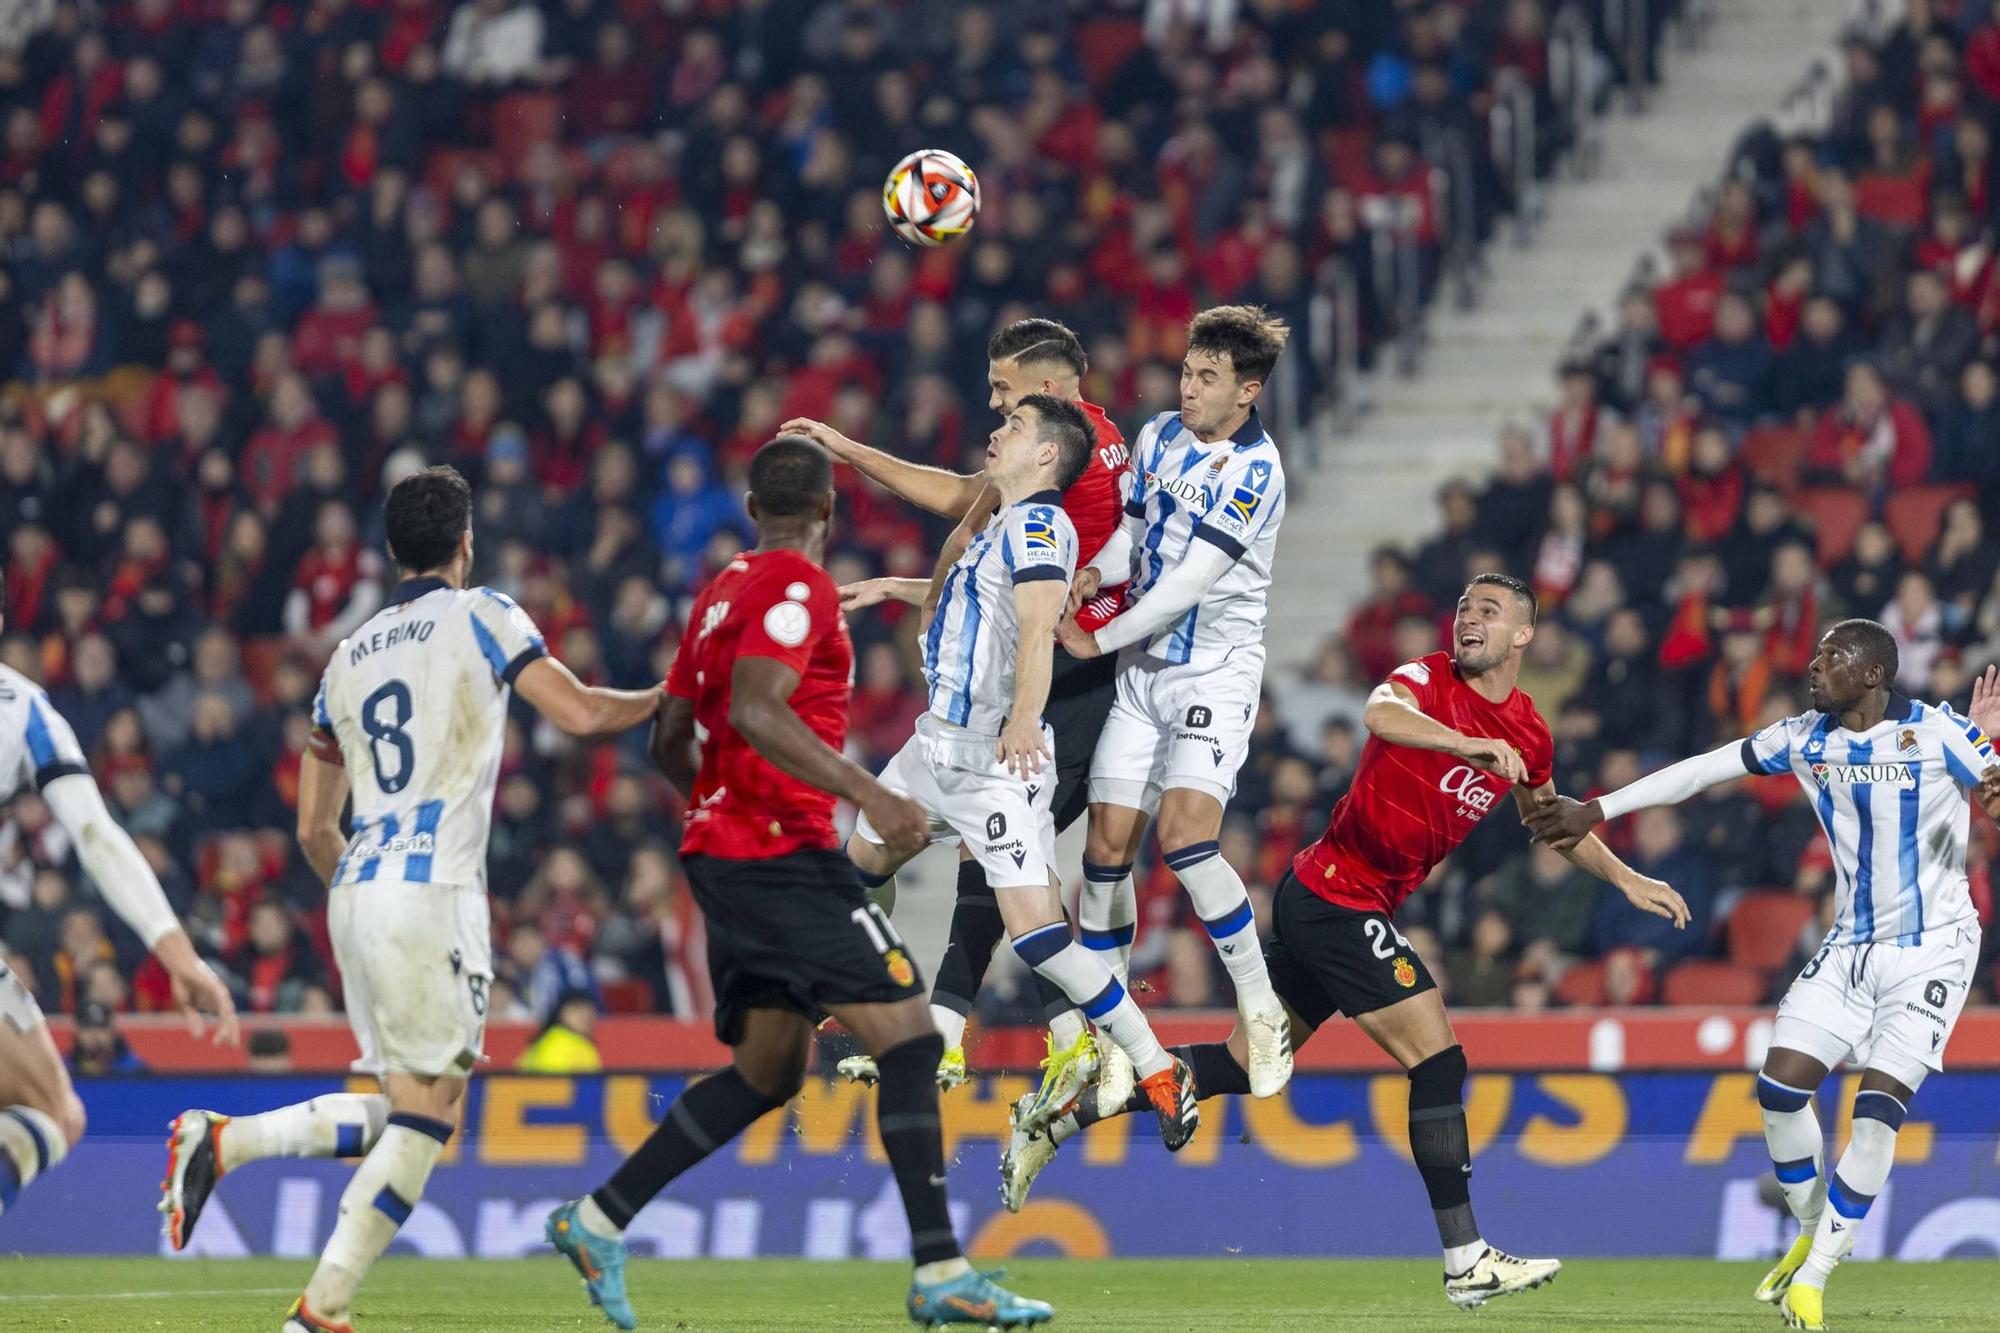 RCD Mallorca-Real Sociedad: Las mejores fotos de la semifinal de la Copa del Rey en Son Moix